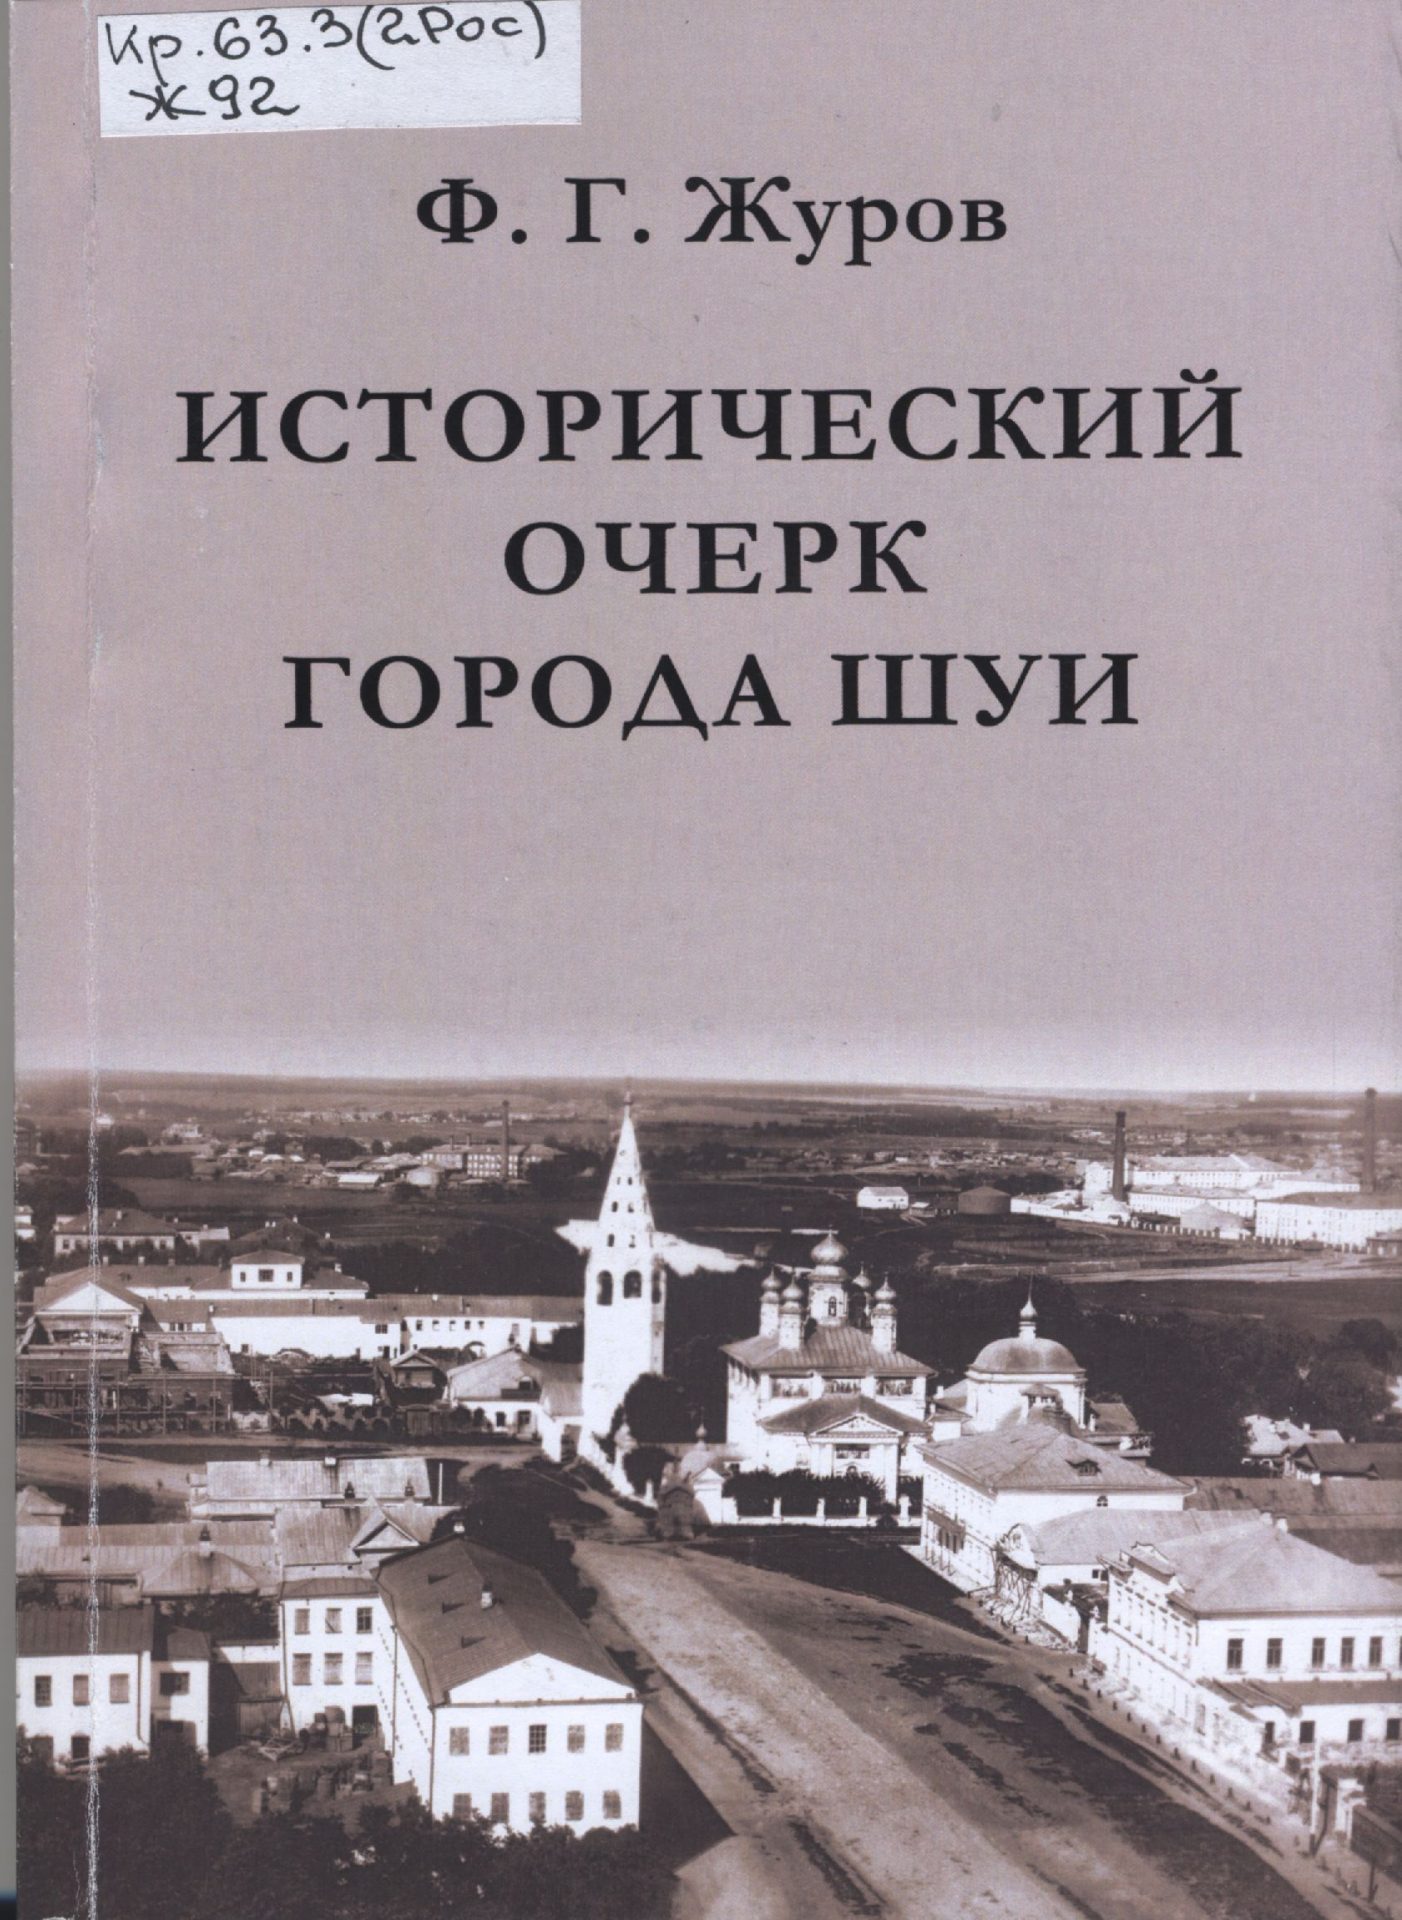 Обложка книги "Исторический очерк города Шуи"